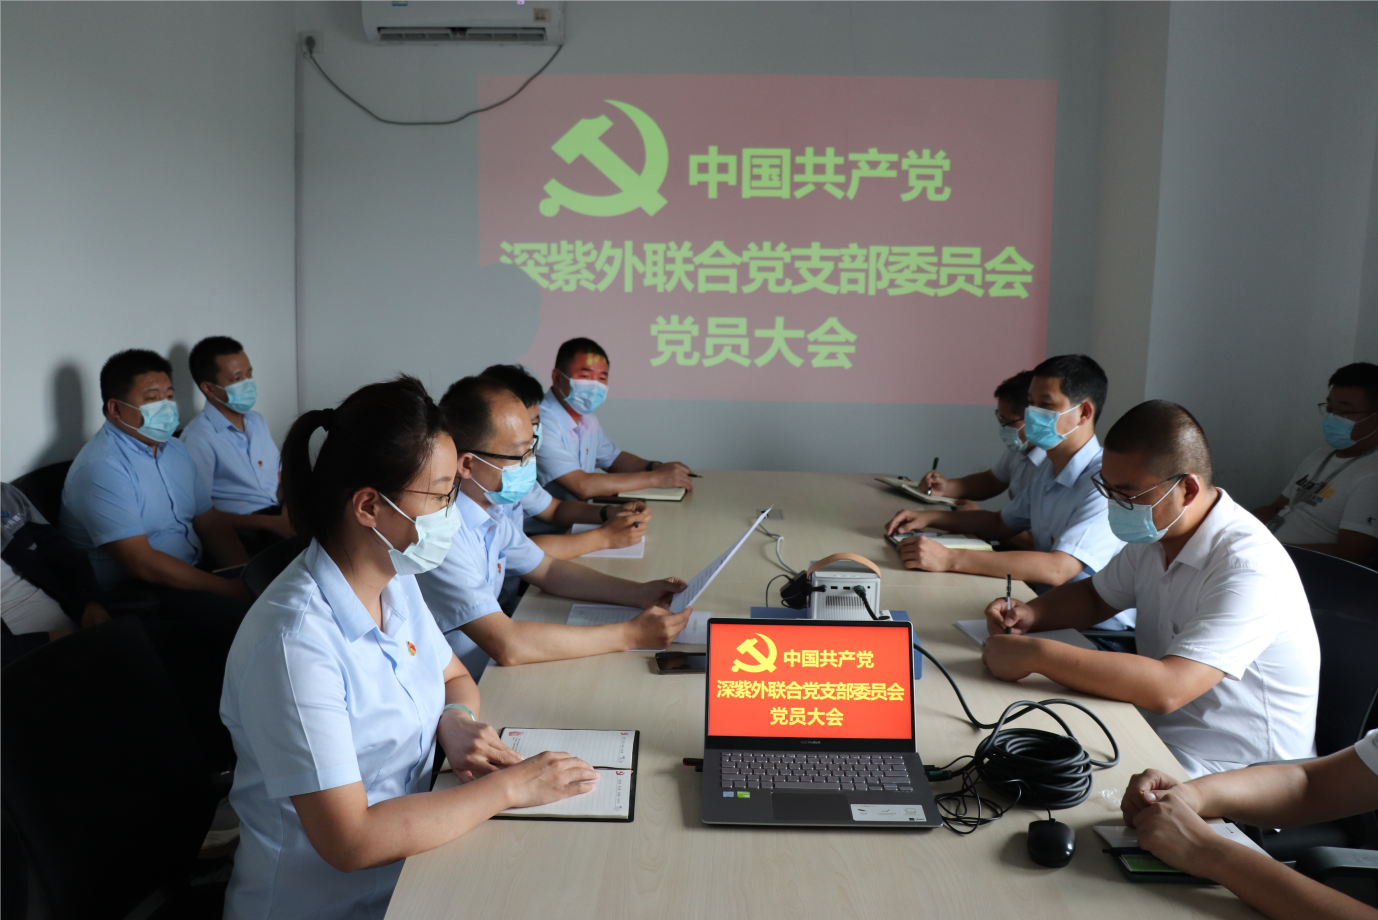 中国共产党深紫外联合支部委员会成立